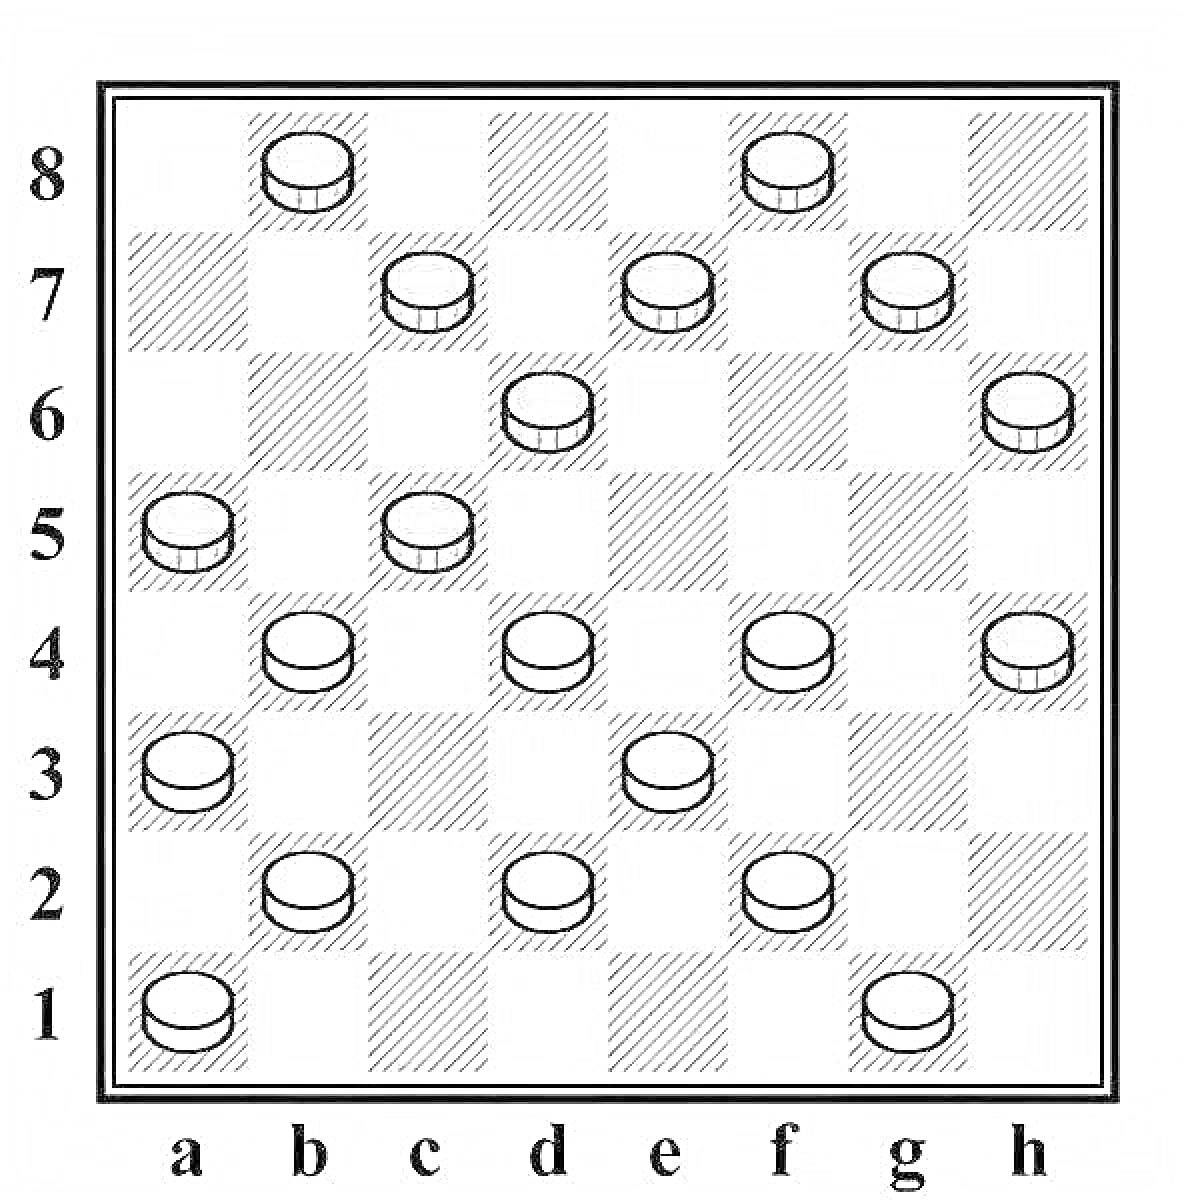 Раскраска Доска для шашек с черными и белыми шашками на клетках от A1 до H8